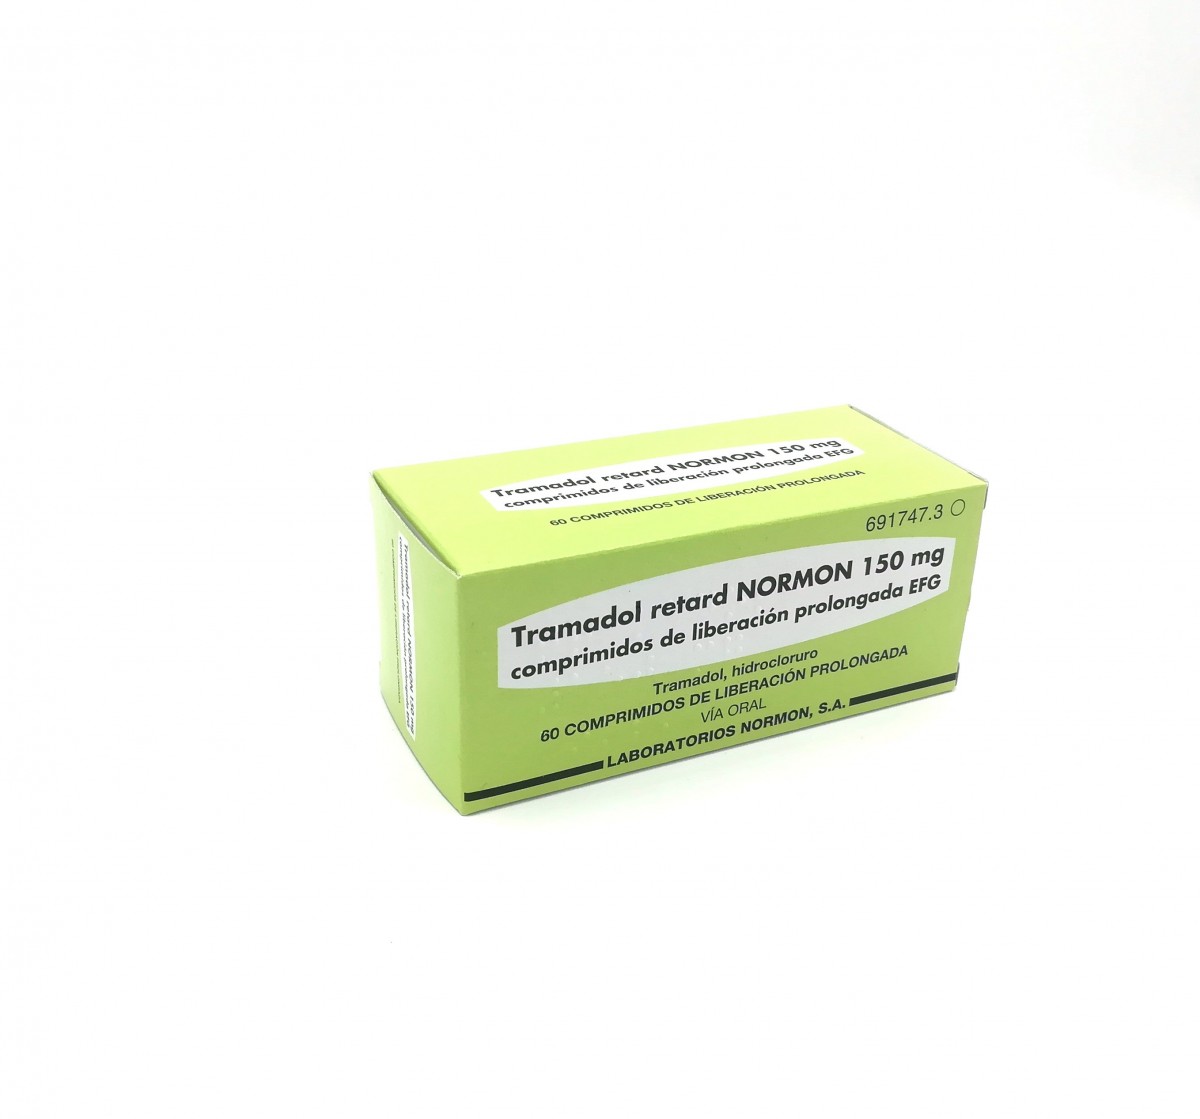 TRAMADOL RETARD NORMON 150 mg COMPRIMIDOS DE LIBERACION PROLONGADA EFG, 60 comprimidos fotografía del envase.